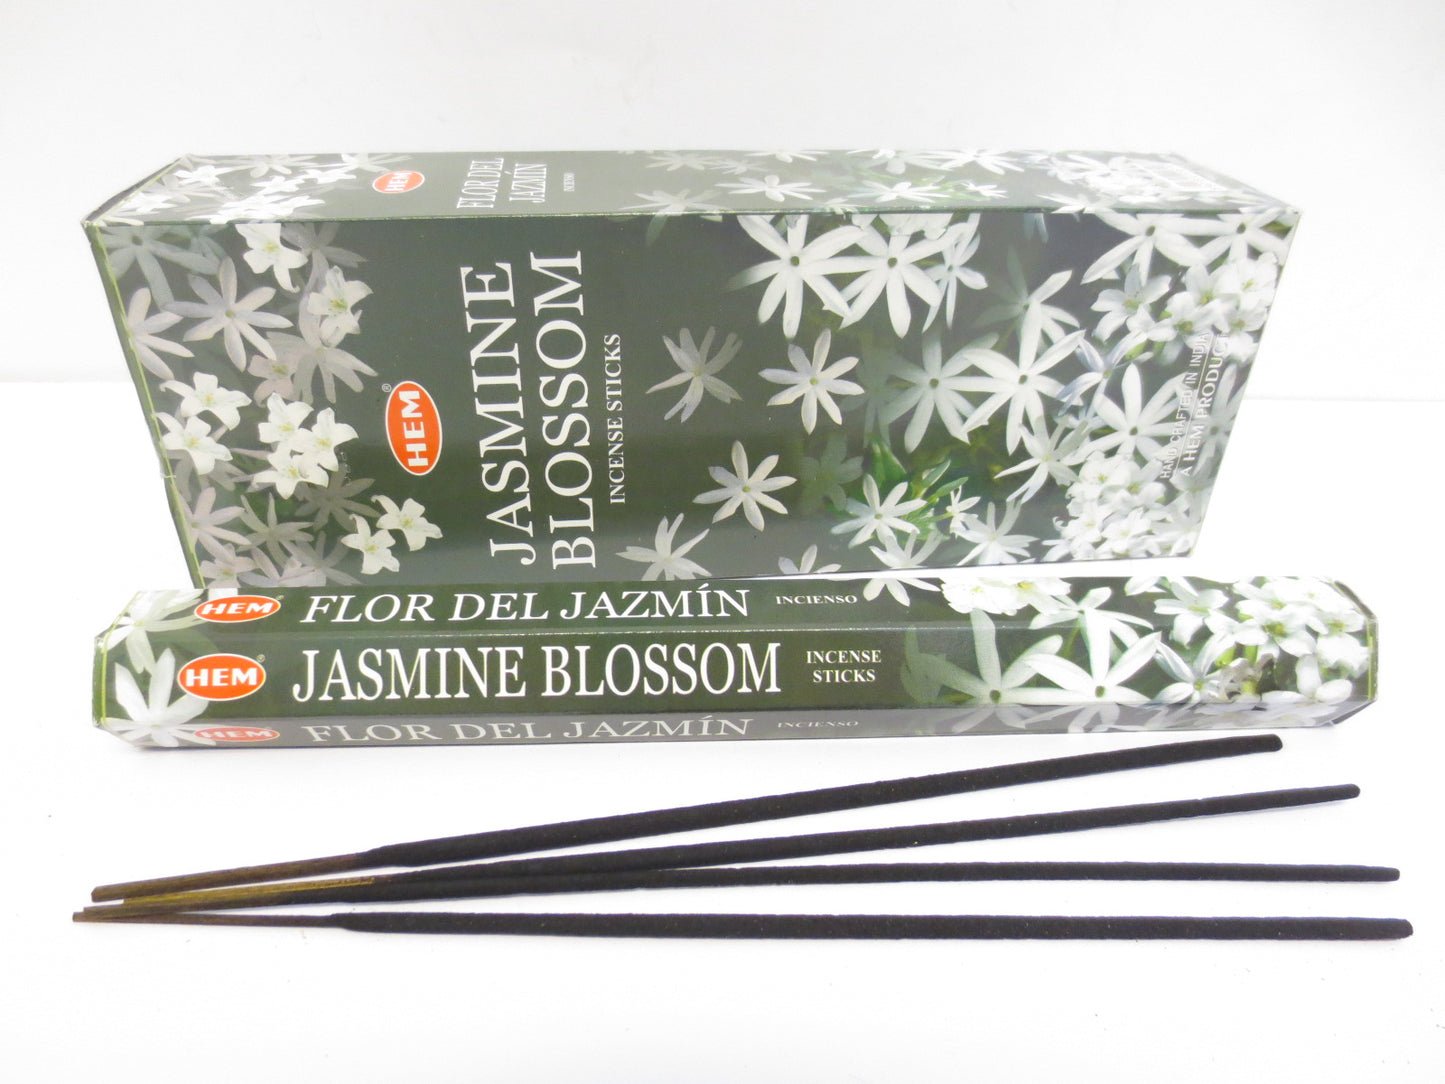 HEM Jasmine Blossom Räucherstäbchen – Die duftende Blüte der Ruhe